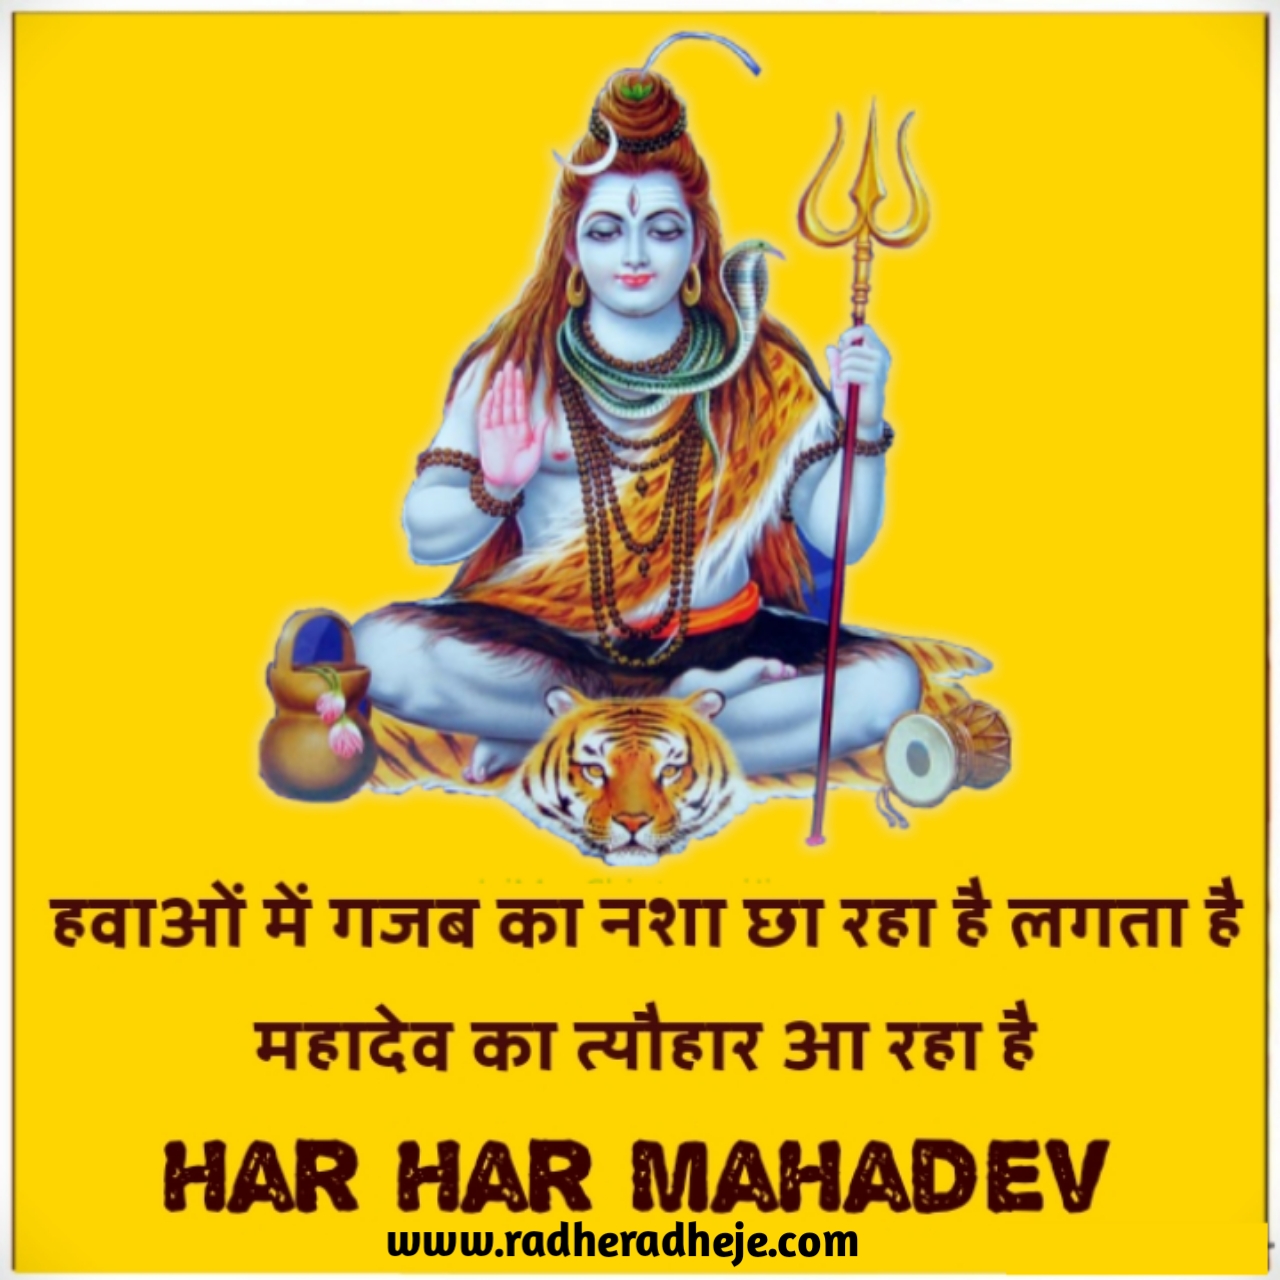 Happy mahashivratri